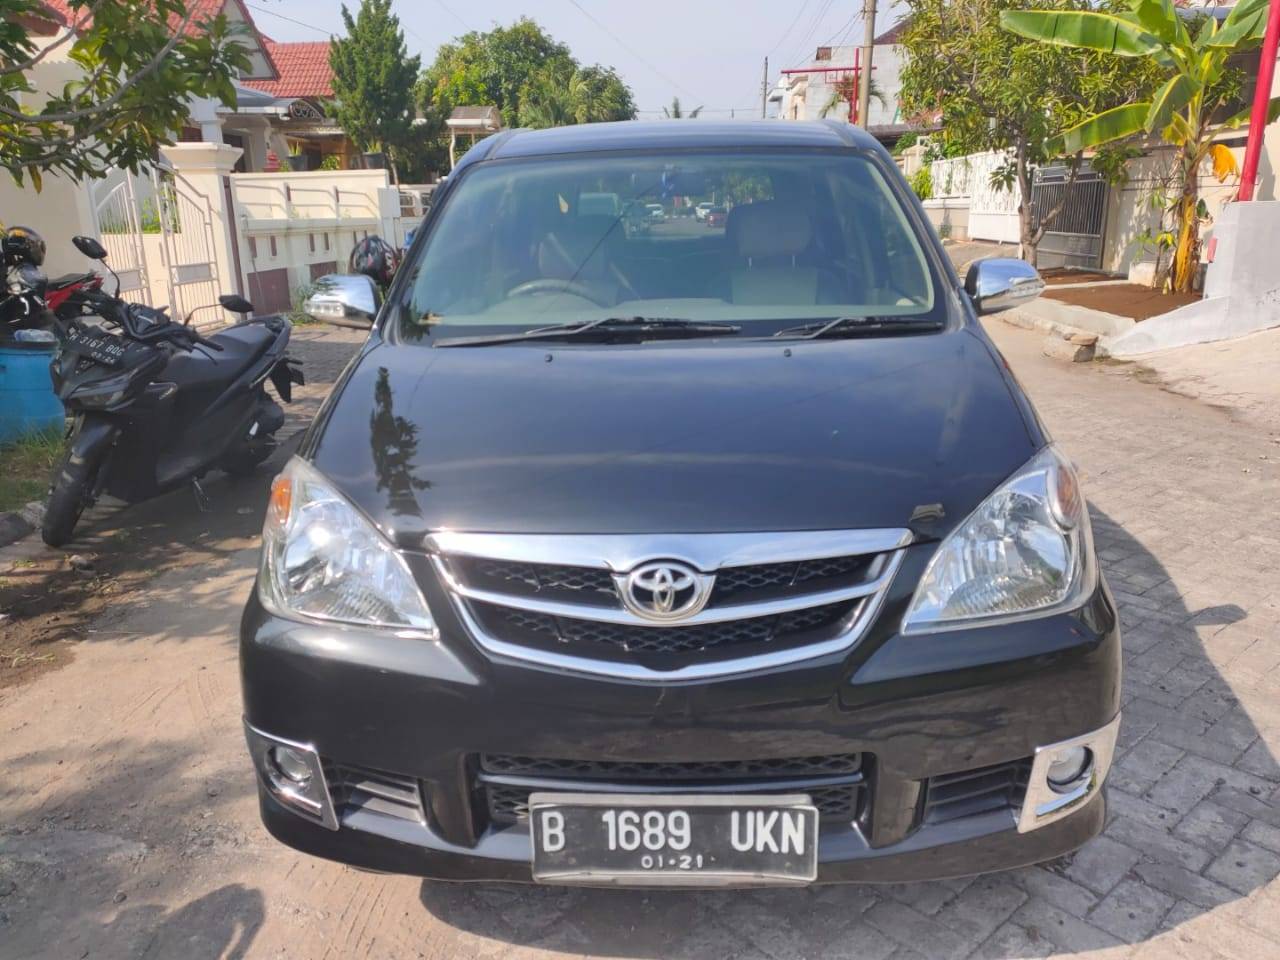 Harga OTR Toyota Kijang Innova di Semarang  Lihat 